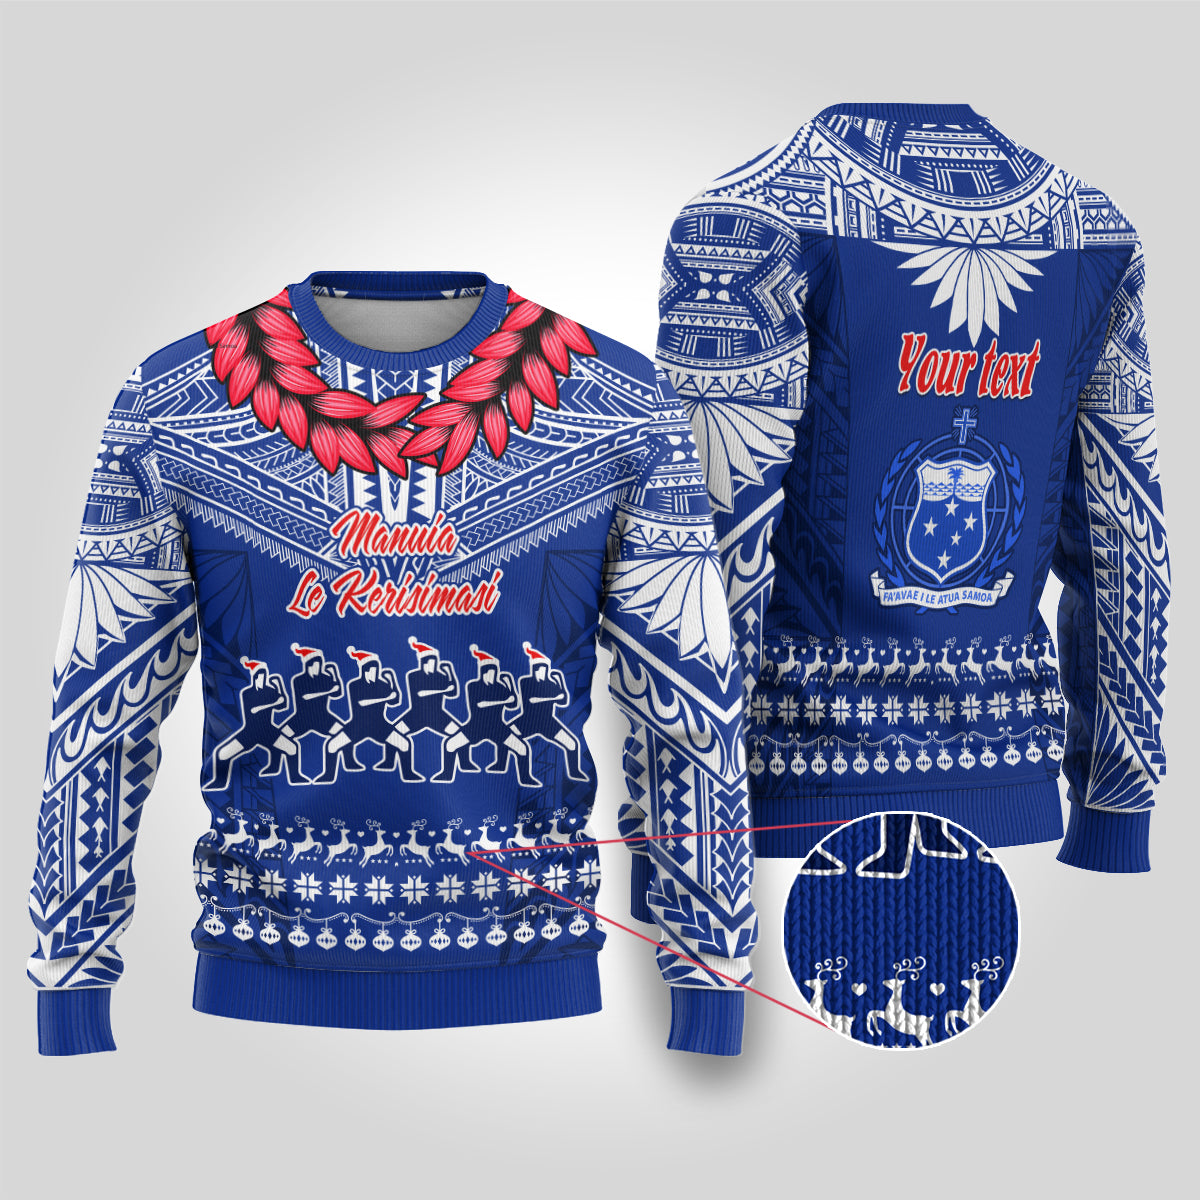 Personalised Toa Samoa Christmas Ugly Christmas Sweater Samoa Siva Tau Manuia Le Kerisimasi Blue Vibe LT9 Blue - Polynesian Pride